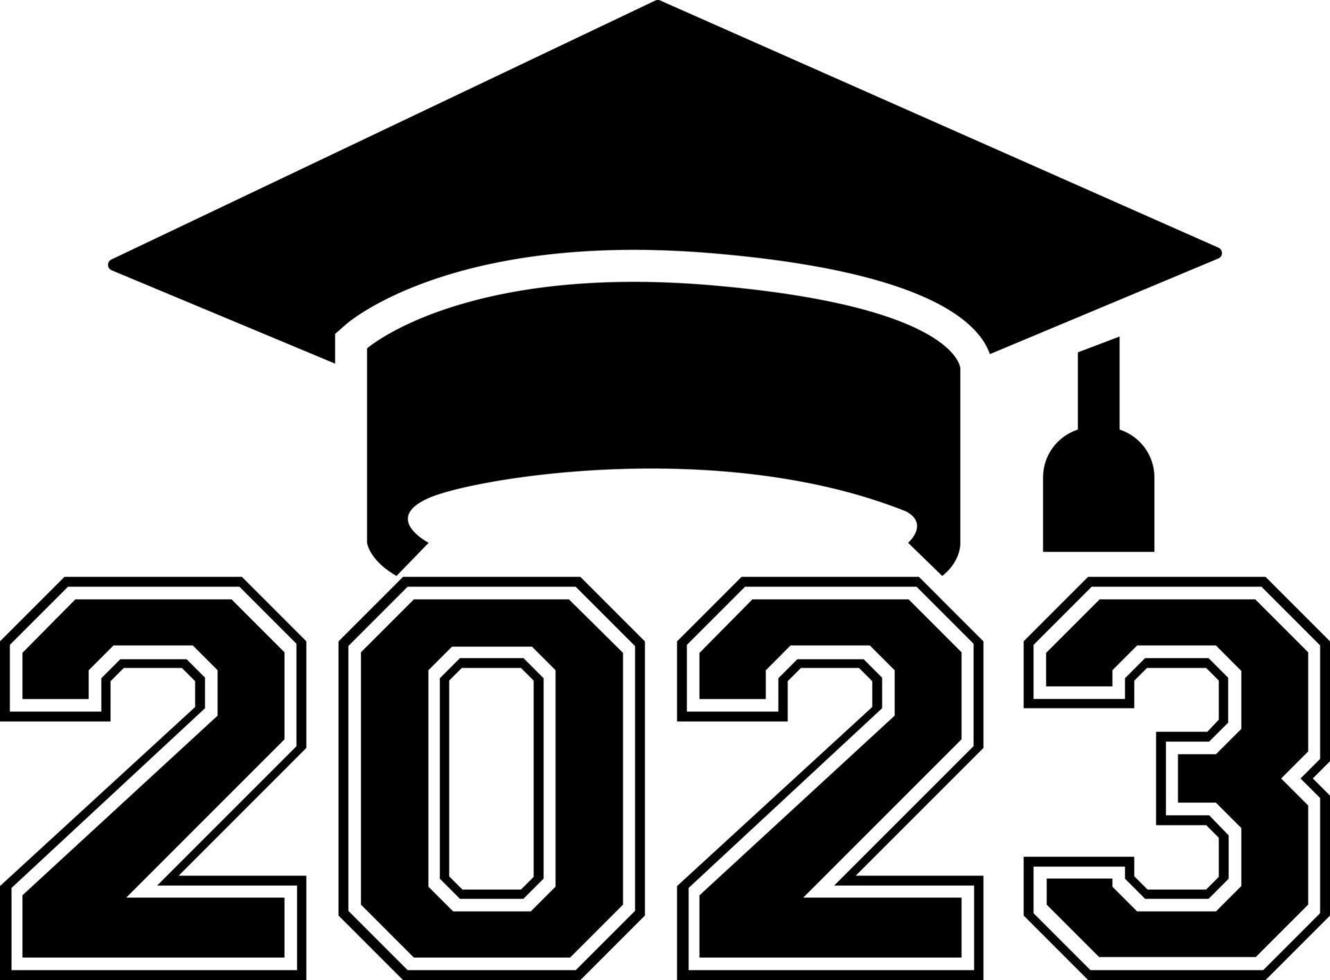 2023 gorra de graduación svg clase de 2023 plantilla de diseño en blanco y negro, pegatina de ventana de coche, vaina, cubierta, fondo negro aislado vector